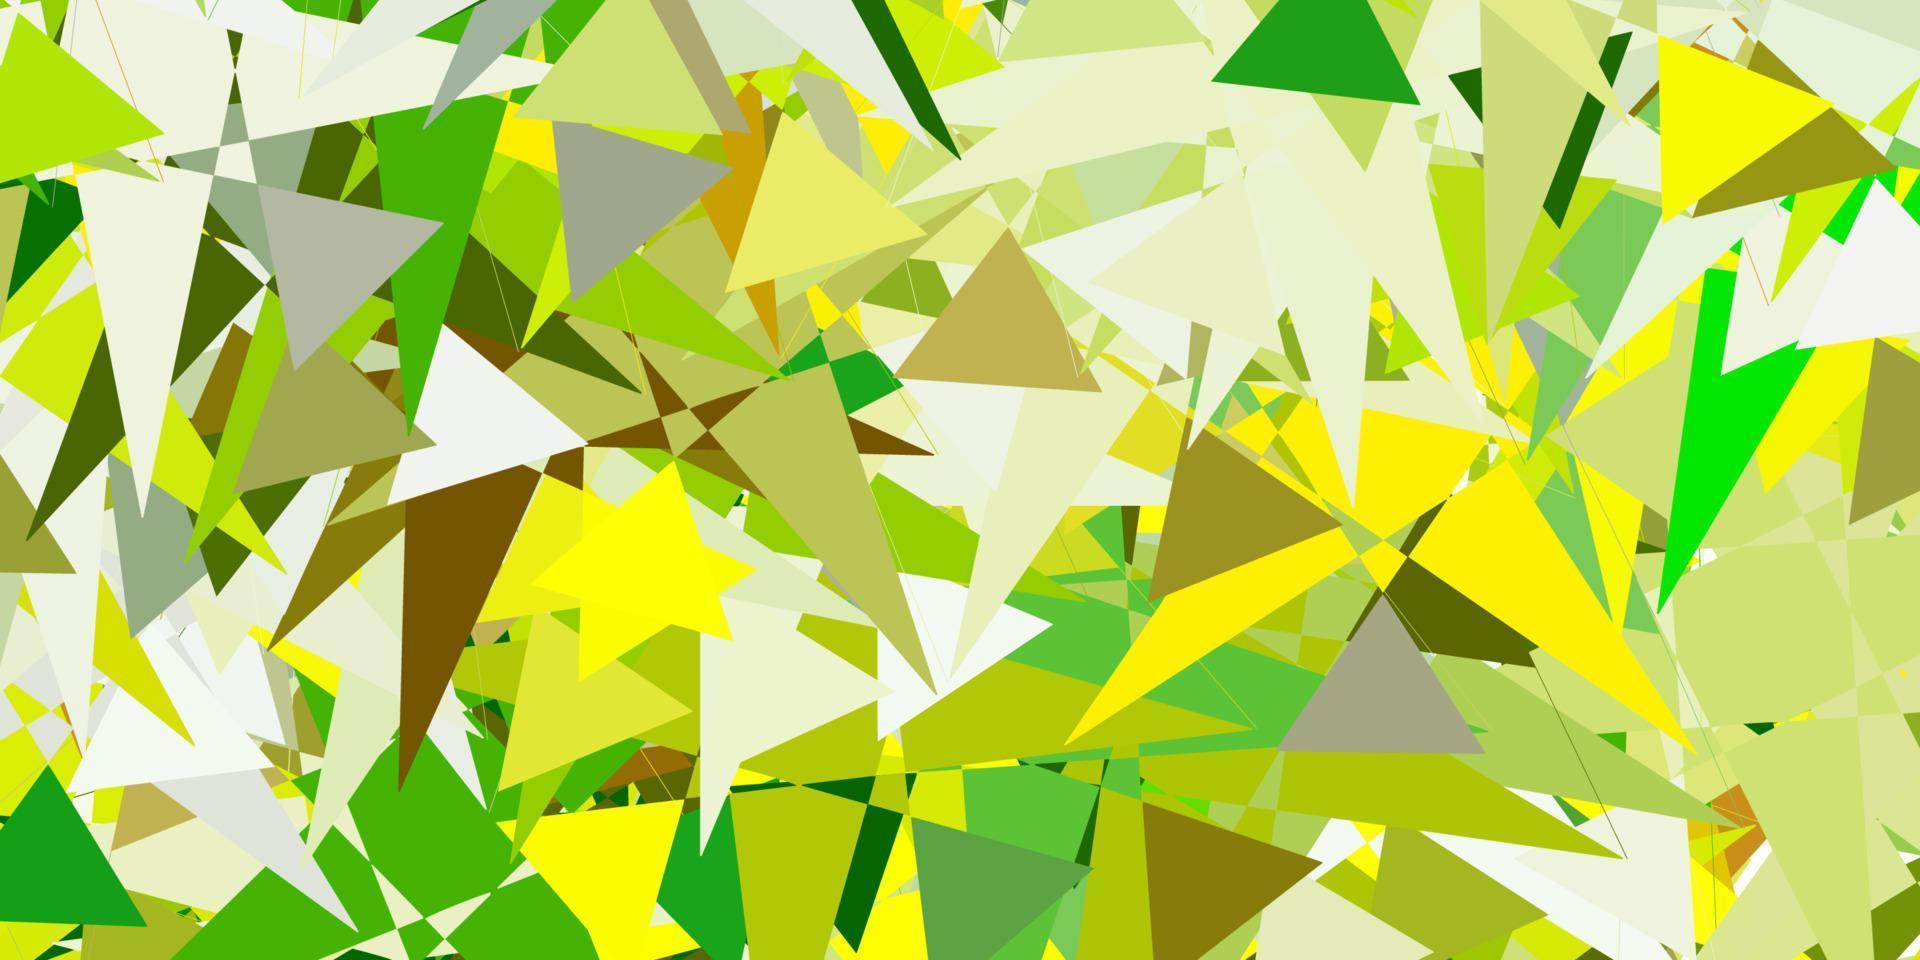 textura de vetor verde e amarelo claro com triângulos aleatórios.